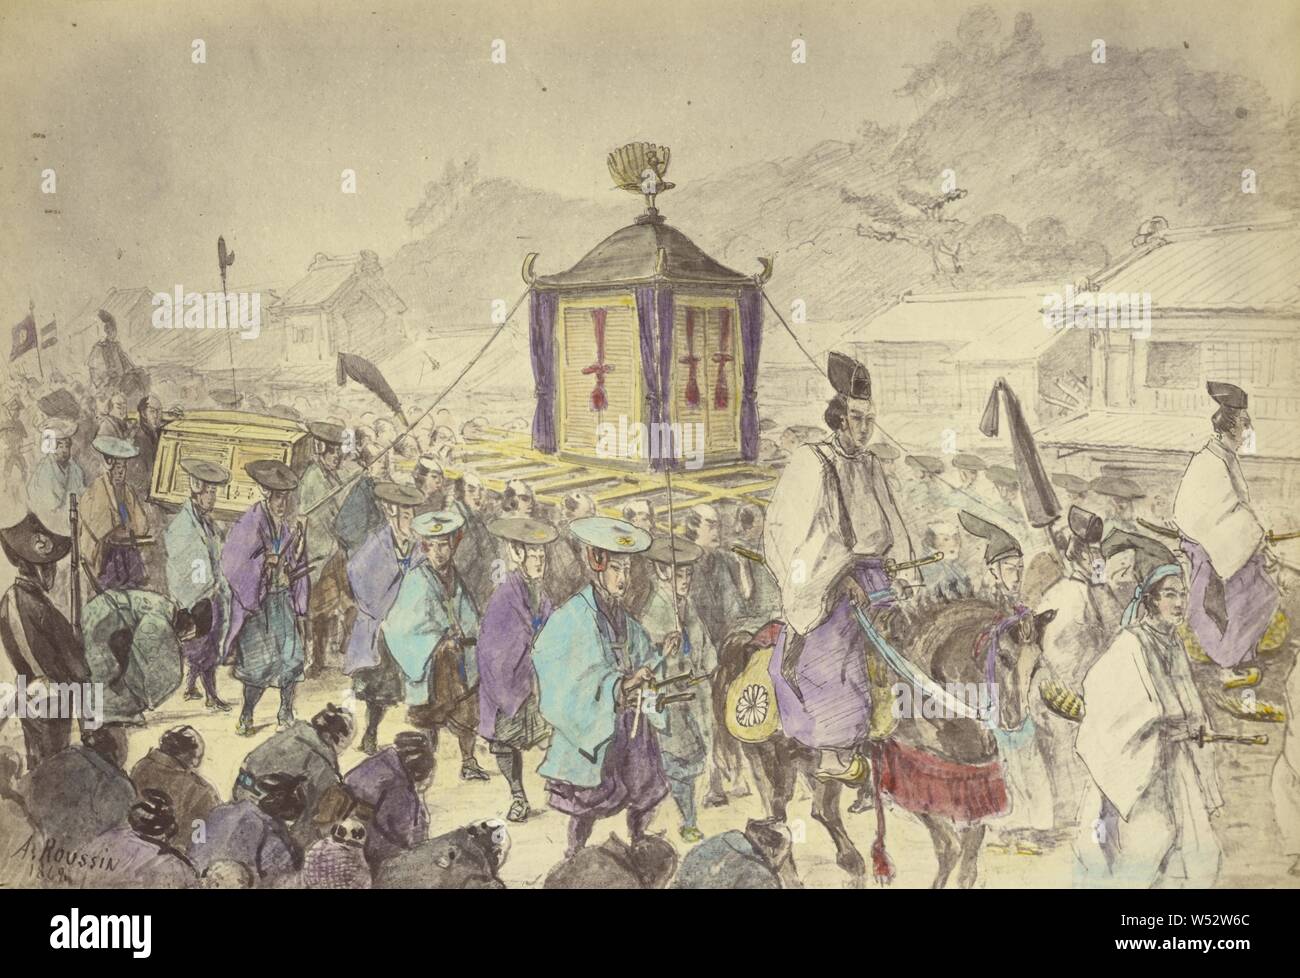 El Mikado la procesión, Felice Beato (inglés, nacido en Italia, 1832 - 1909), Japón, 1868, Mano de color de albúmina imprimir plata, 19.1 x 27.6 cm (7 1/2 x 10 7/8 pulg Foto de stock